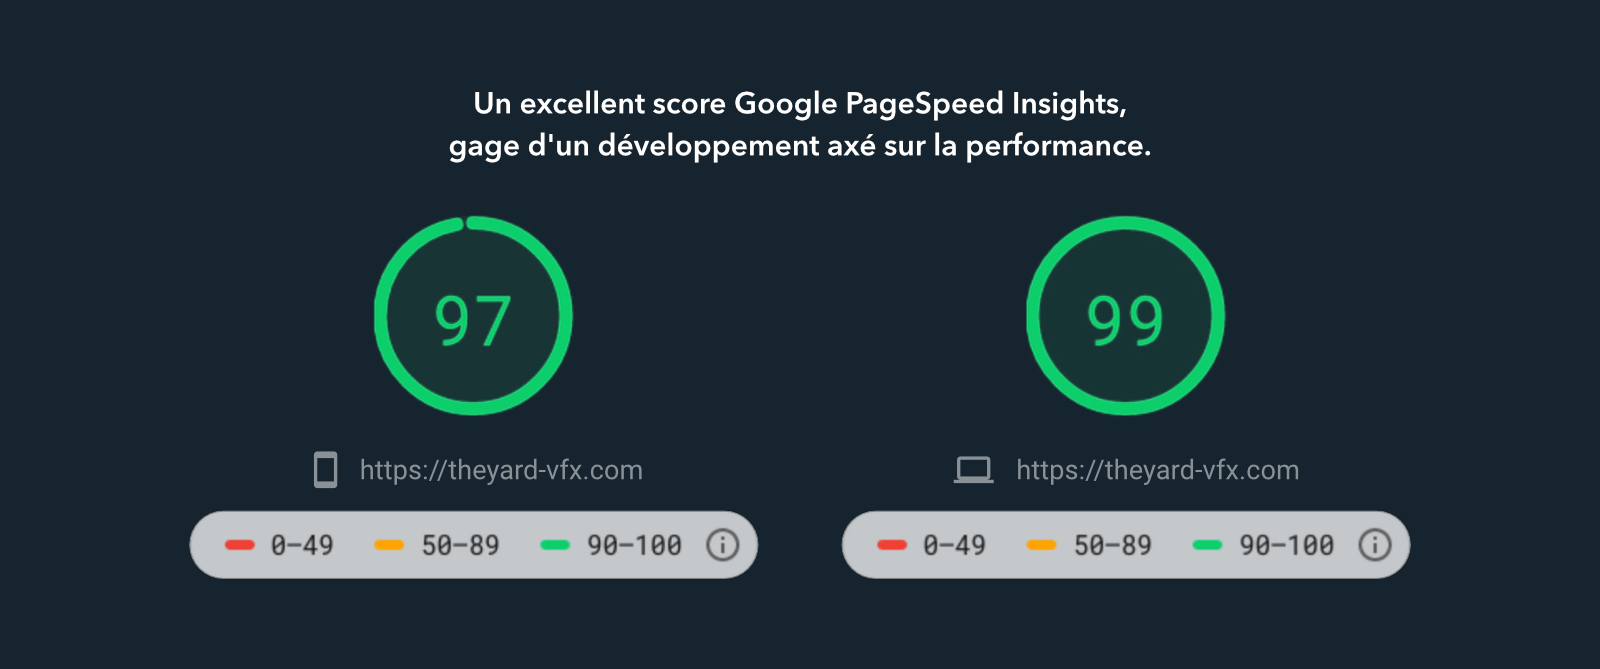 Un excellent score Google PageSpeed Insights gage d'un développement axé sur la performance